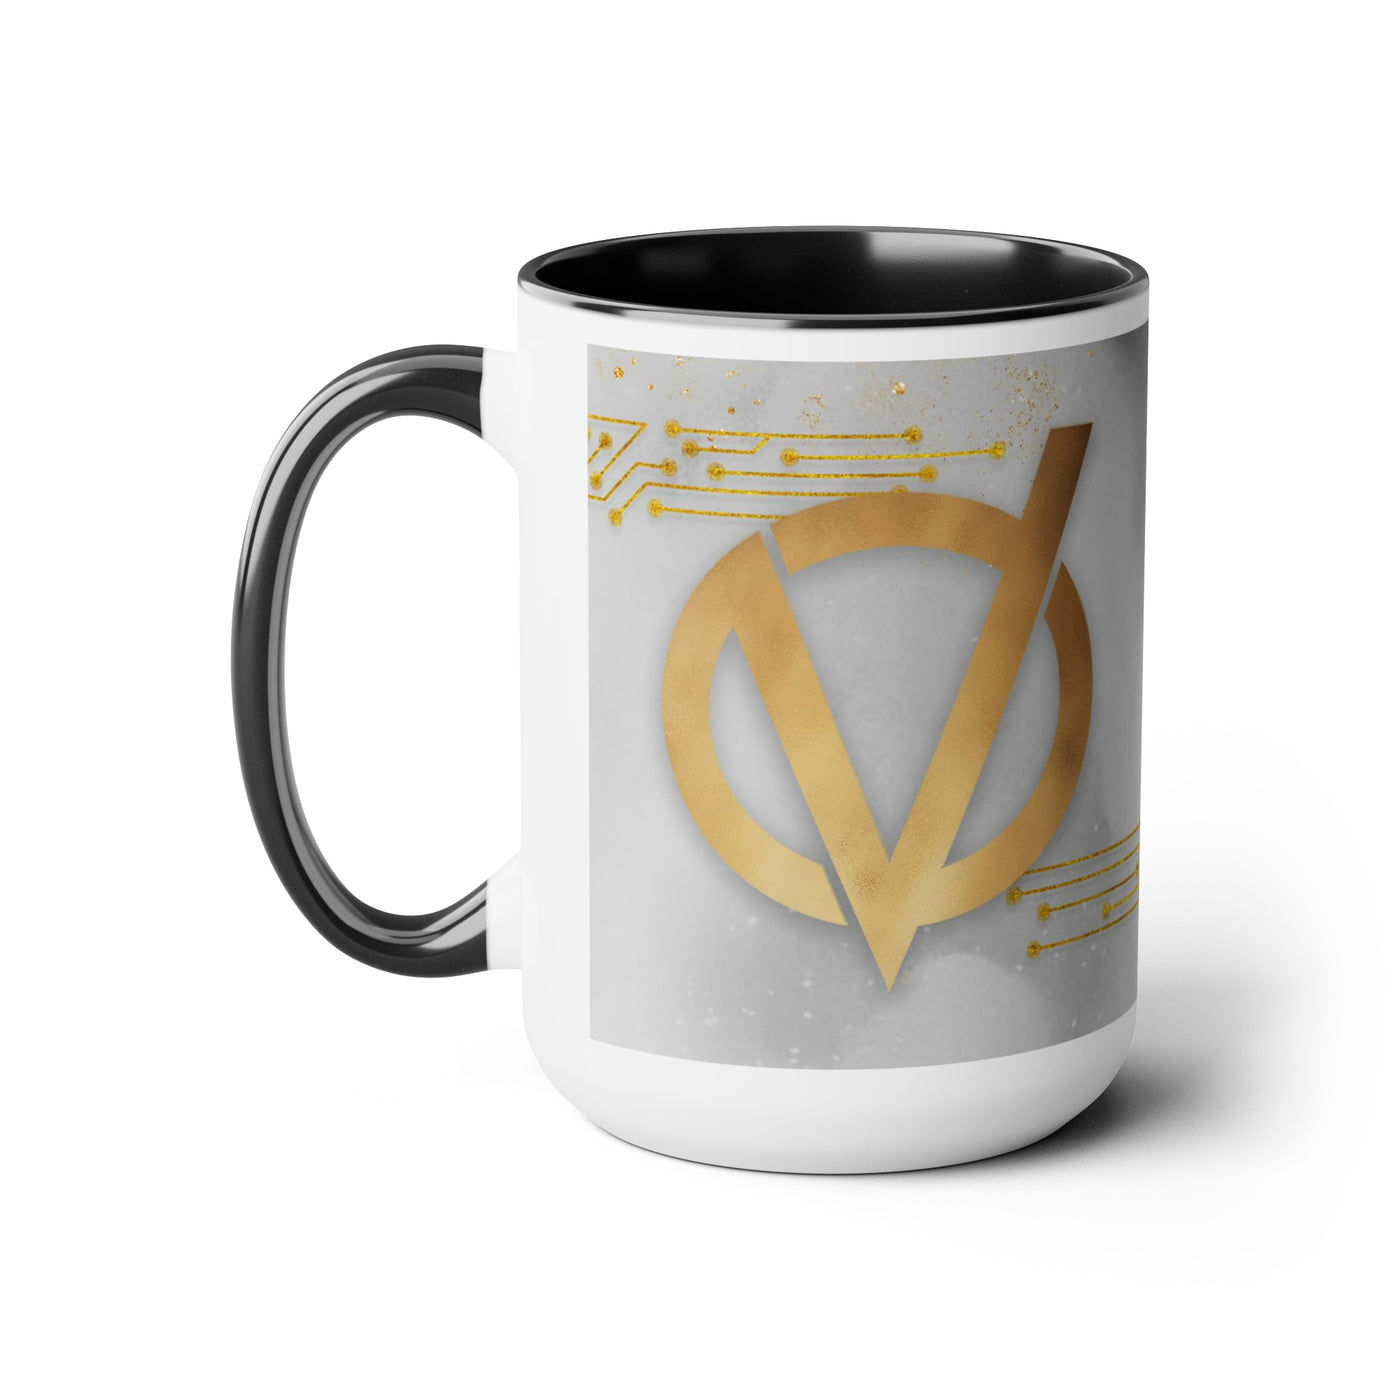 V Gold Logo Two-Tone Coffee Mug, 15oz